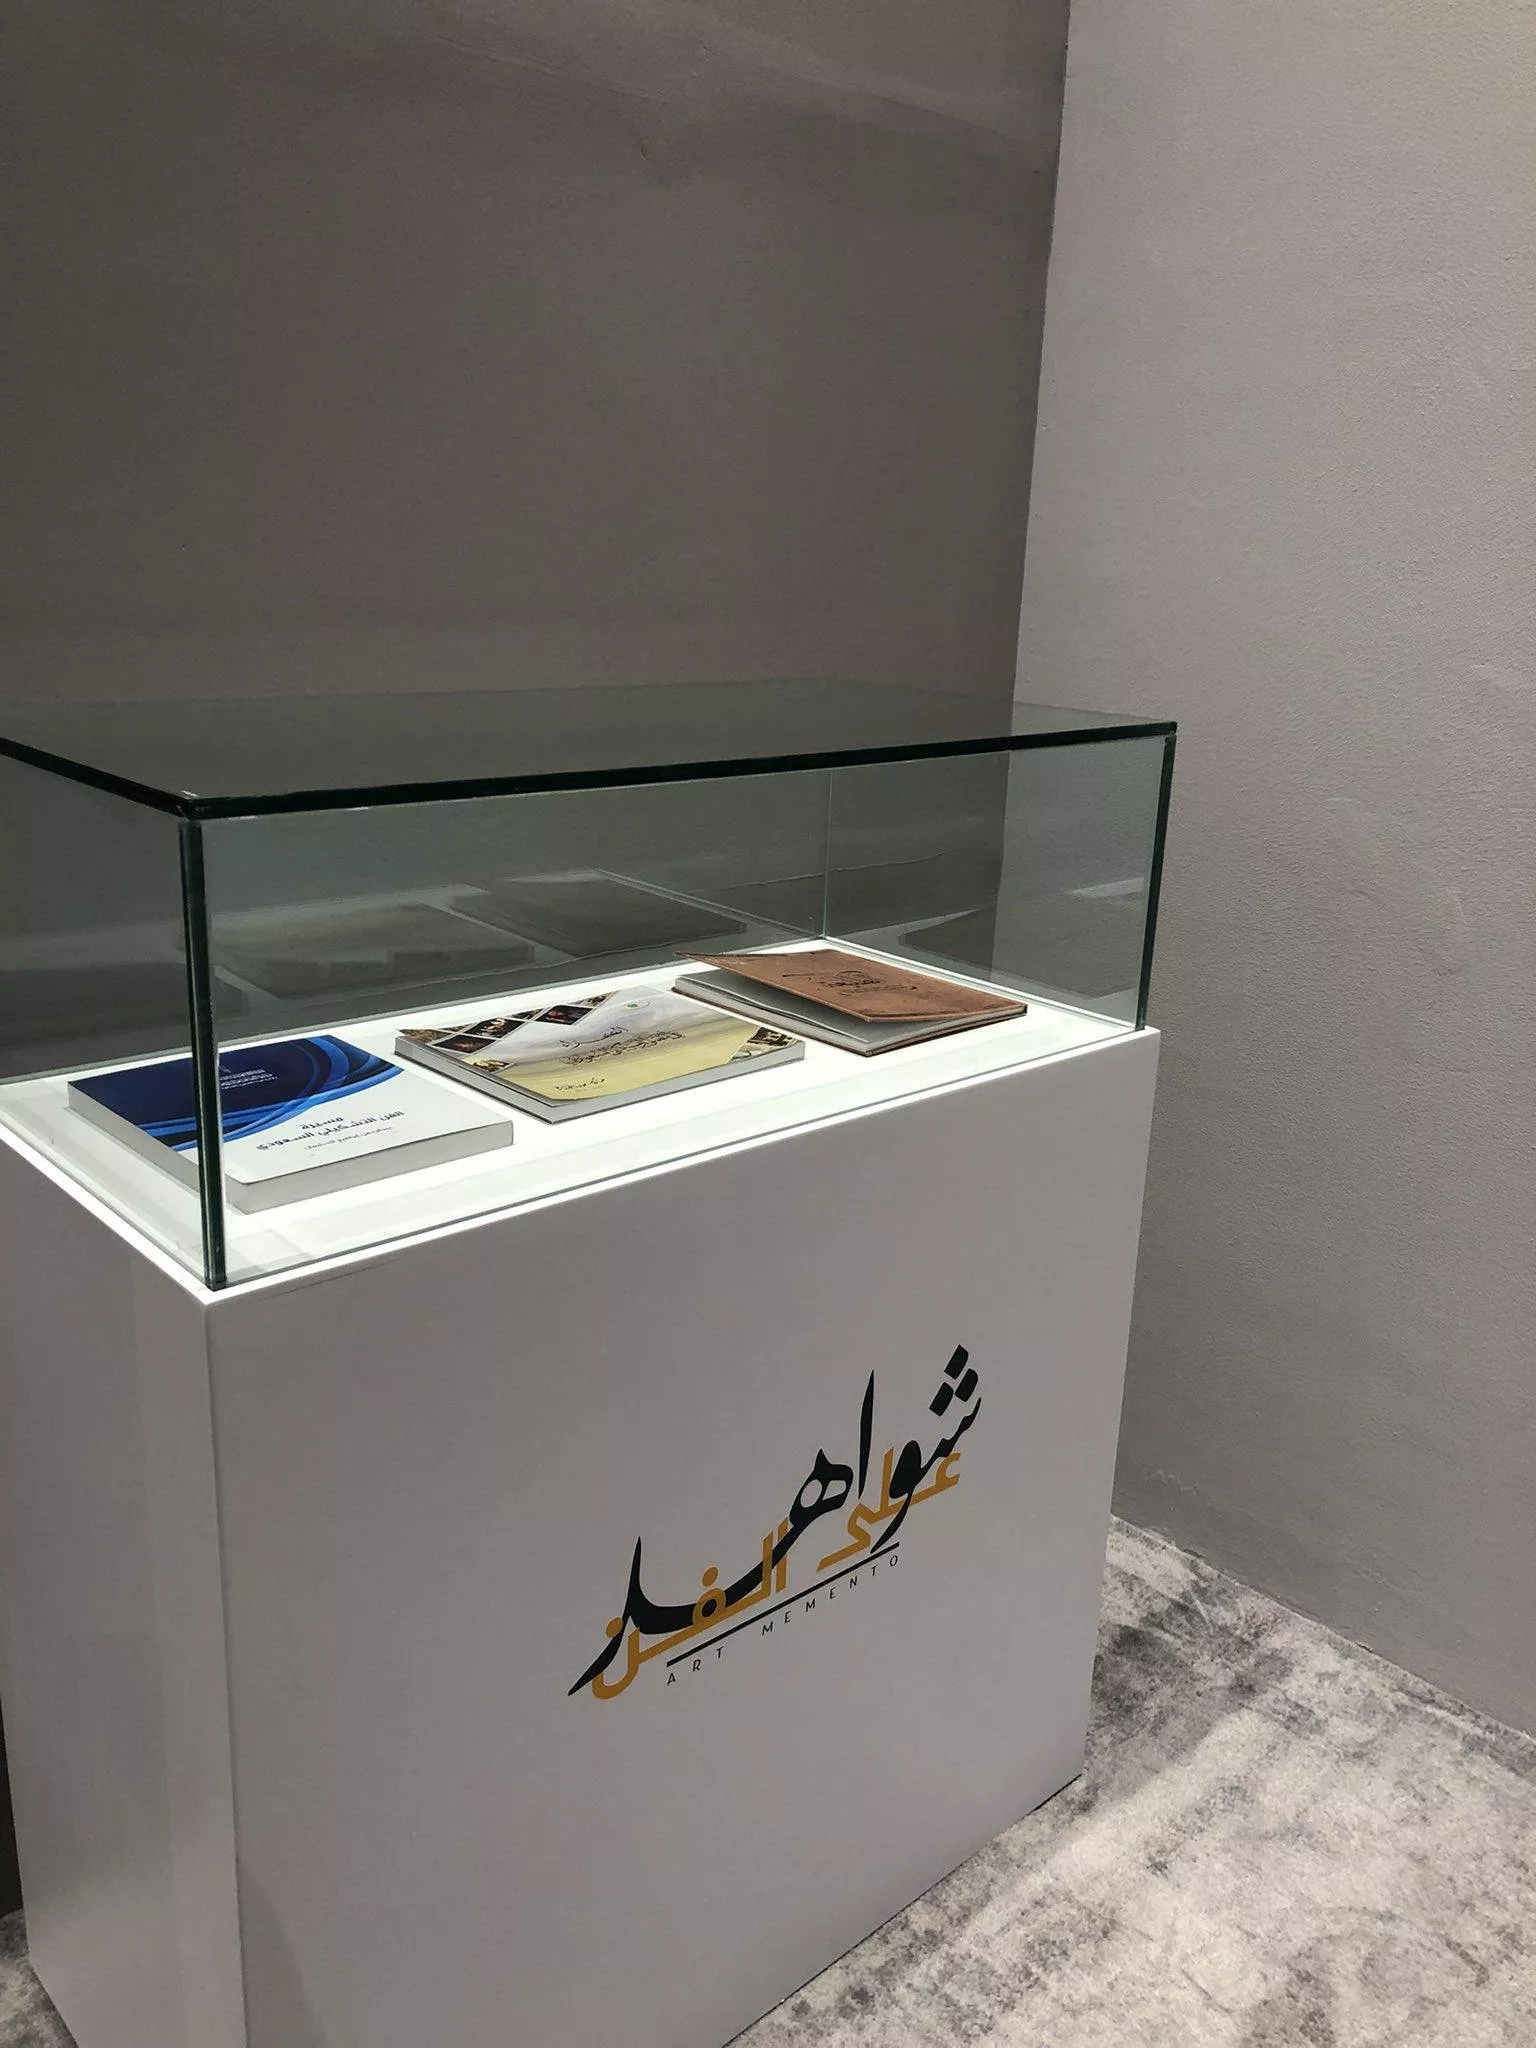 شواهد على الفن: معرض تشكيلي سعودي للوحات حُفظت طوال نصف قرن